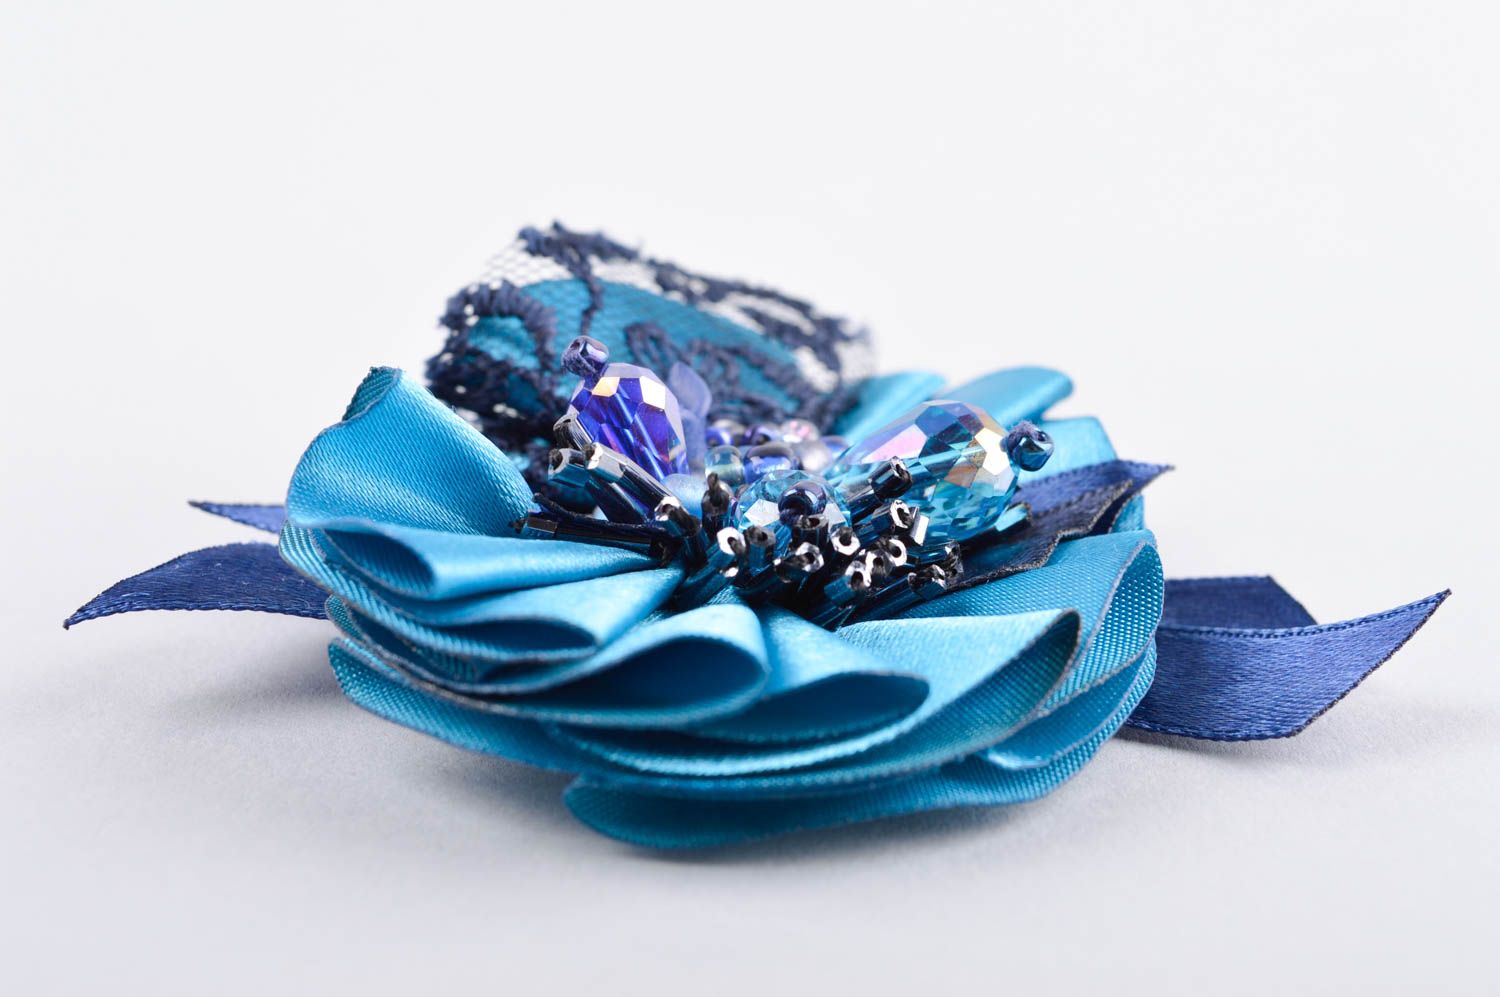 Брошь ручной работы голубая украшение из ткани с кружевом дизайнерское украшение фото 3